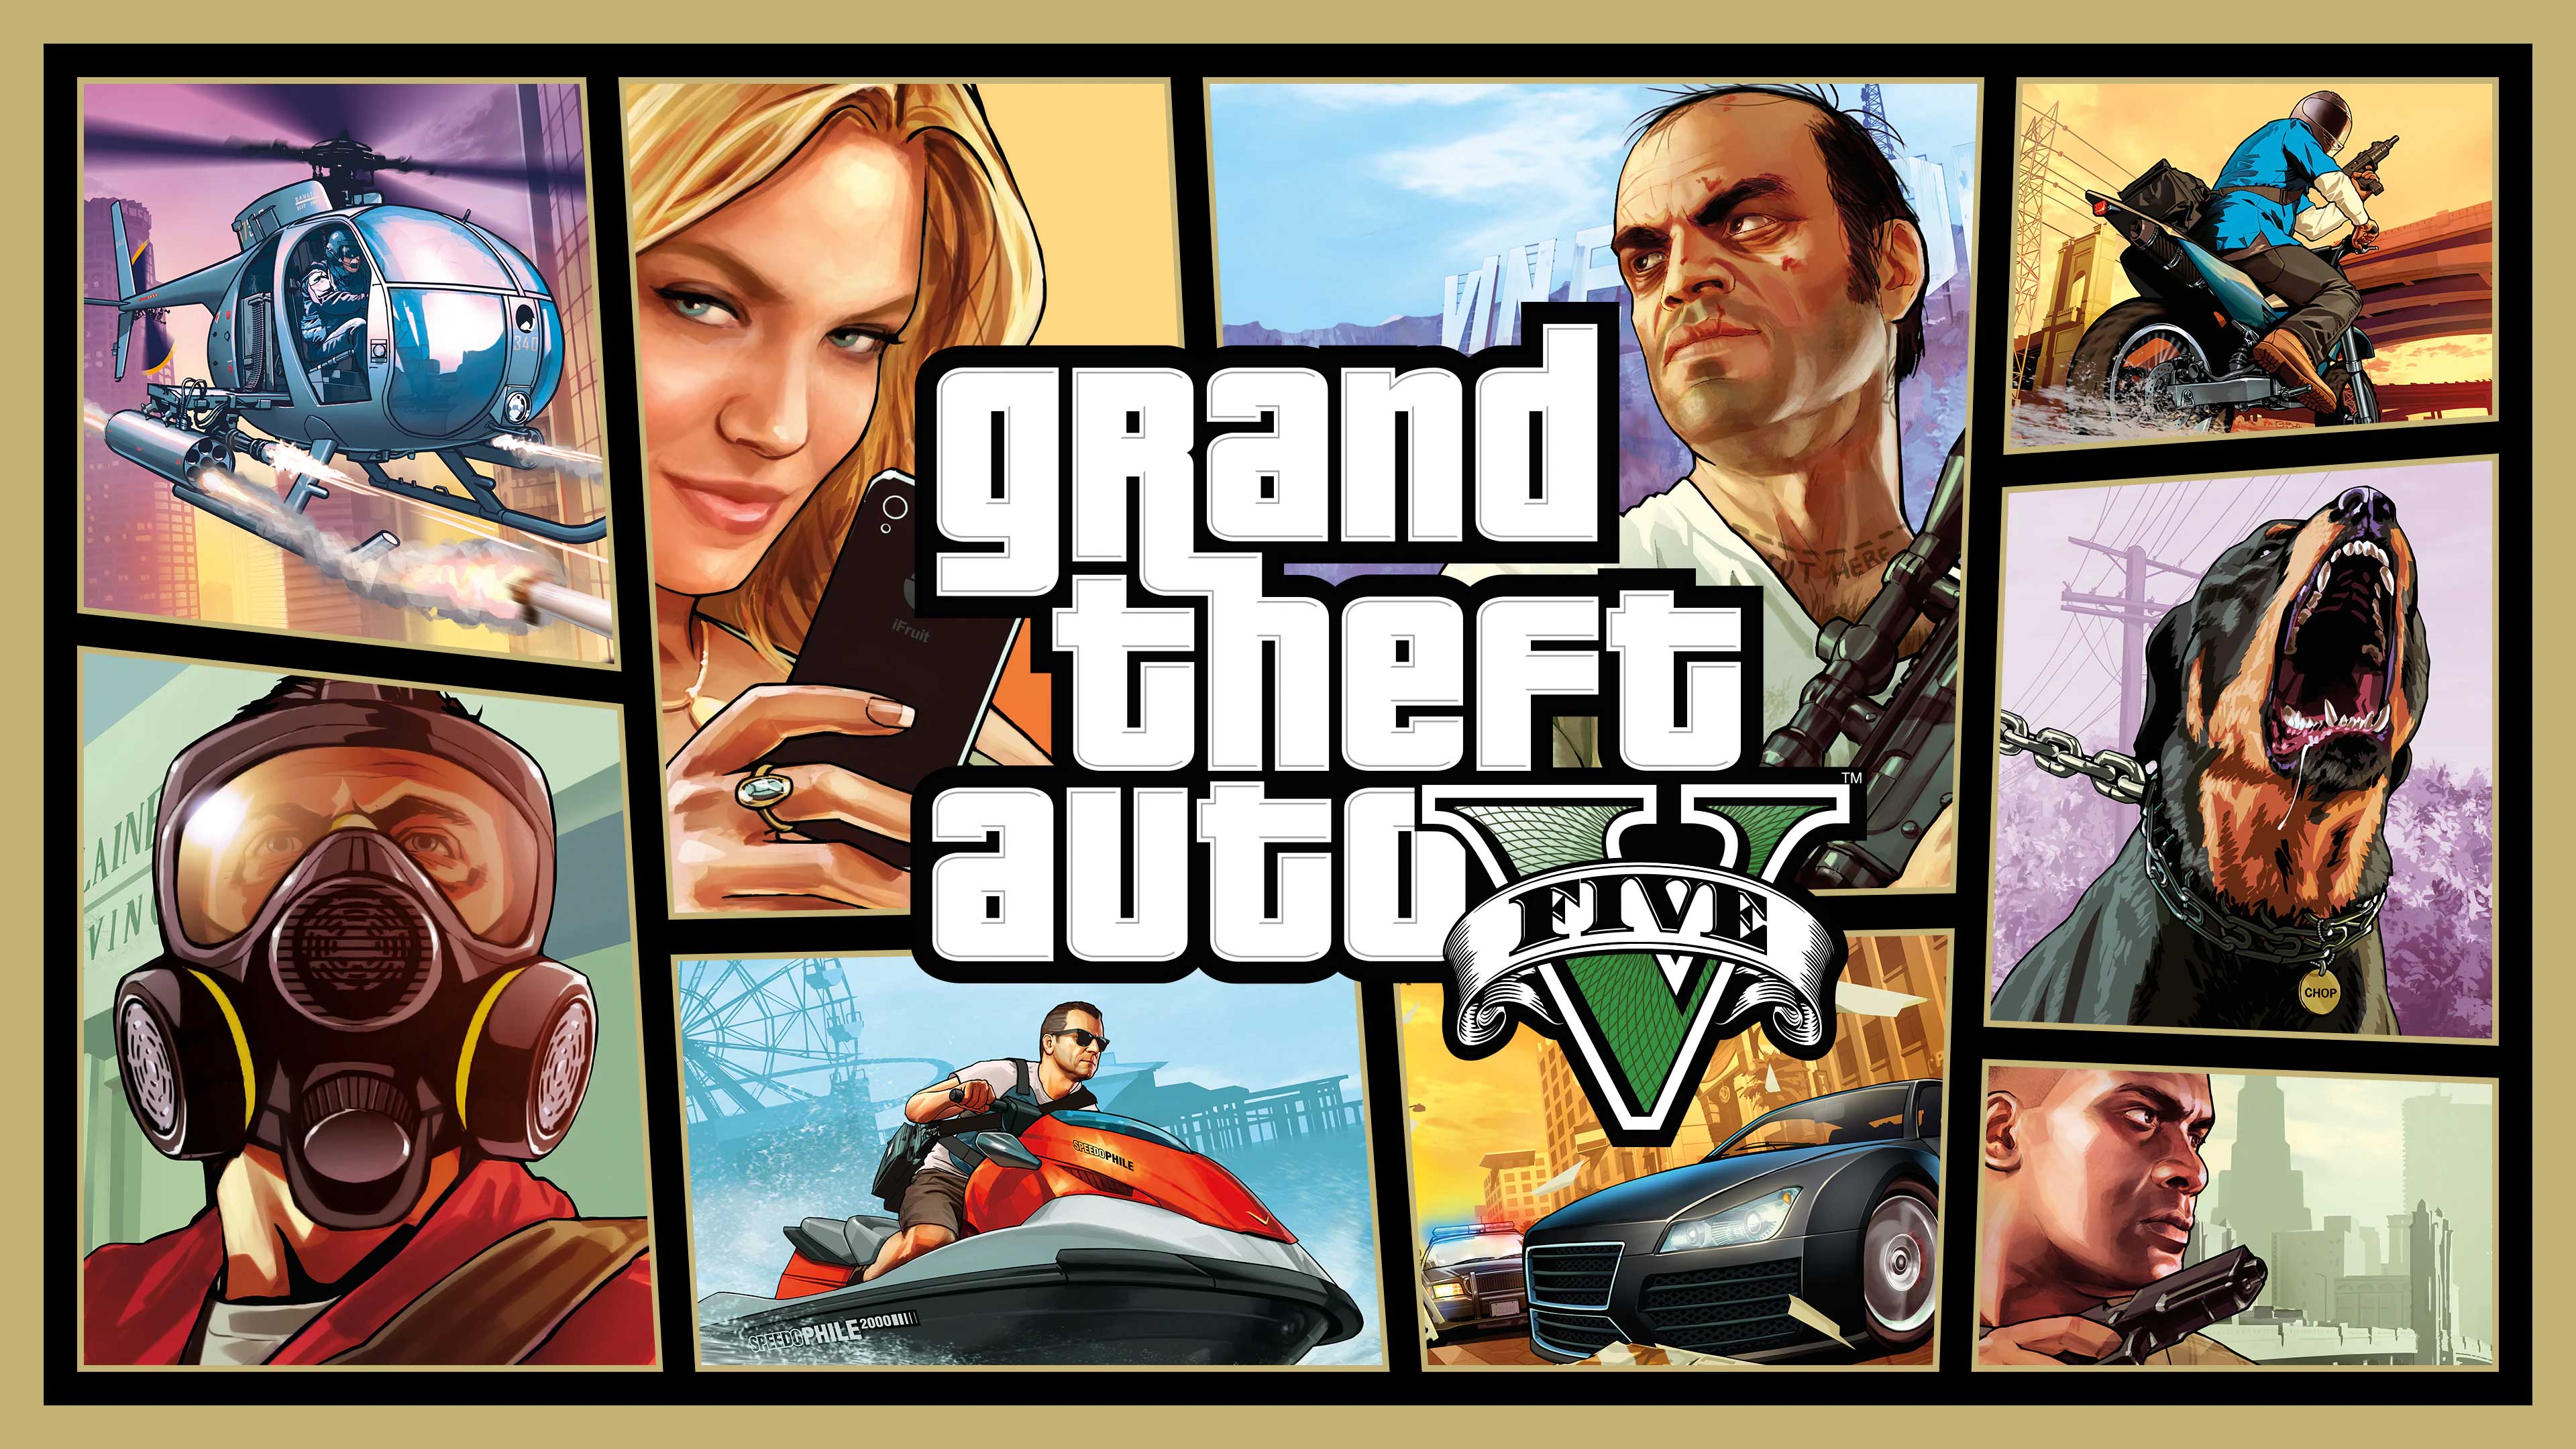 Grand Theft Auto V, The Game Beater, thegamebeater.com